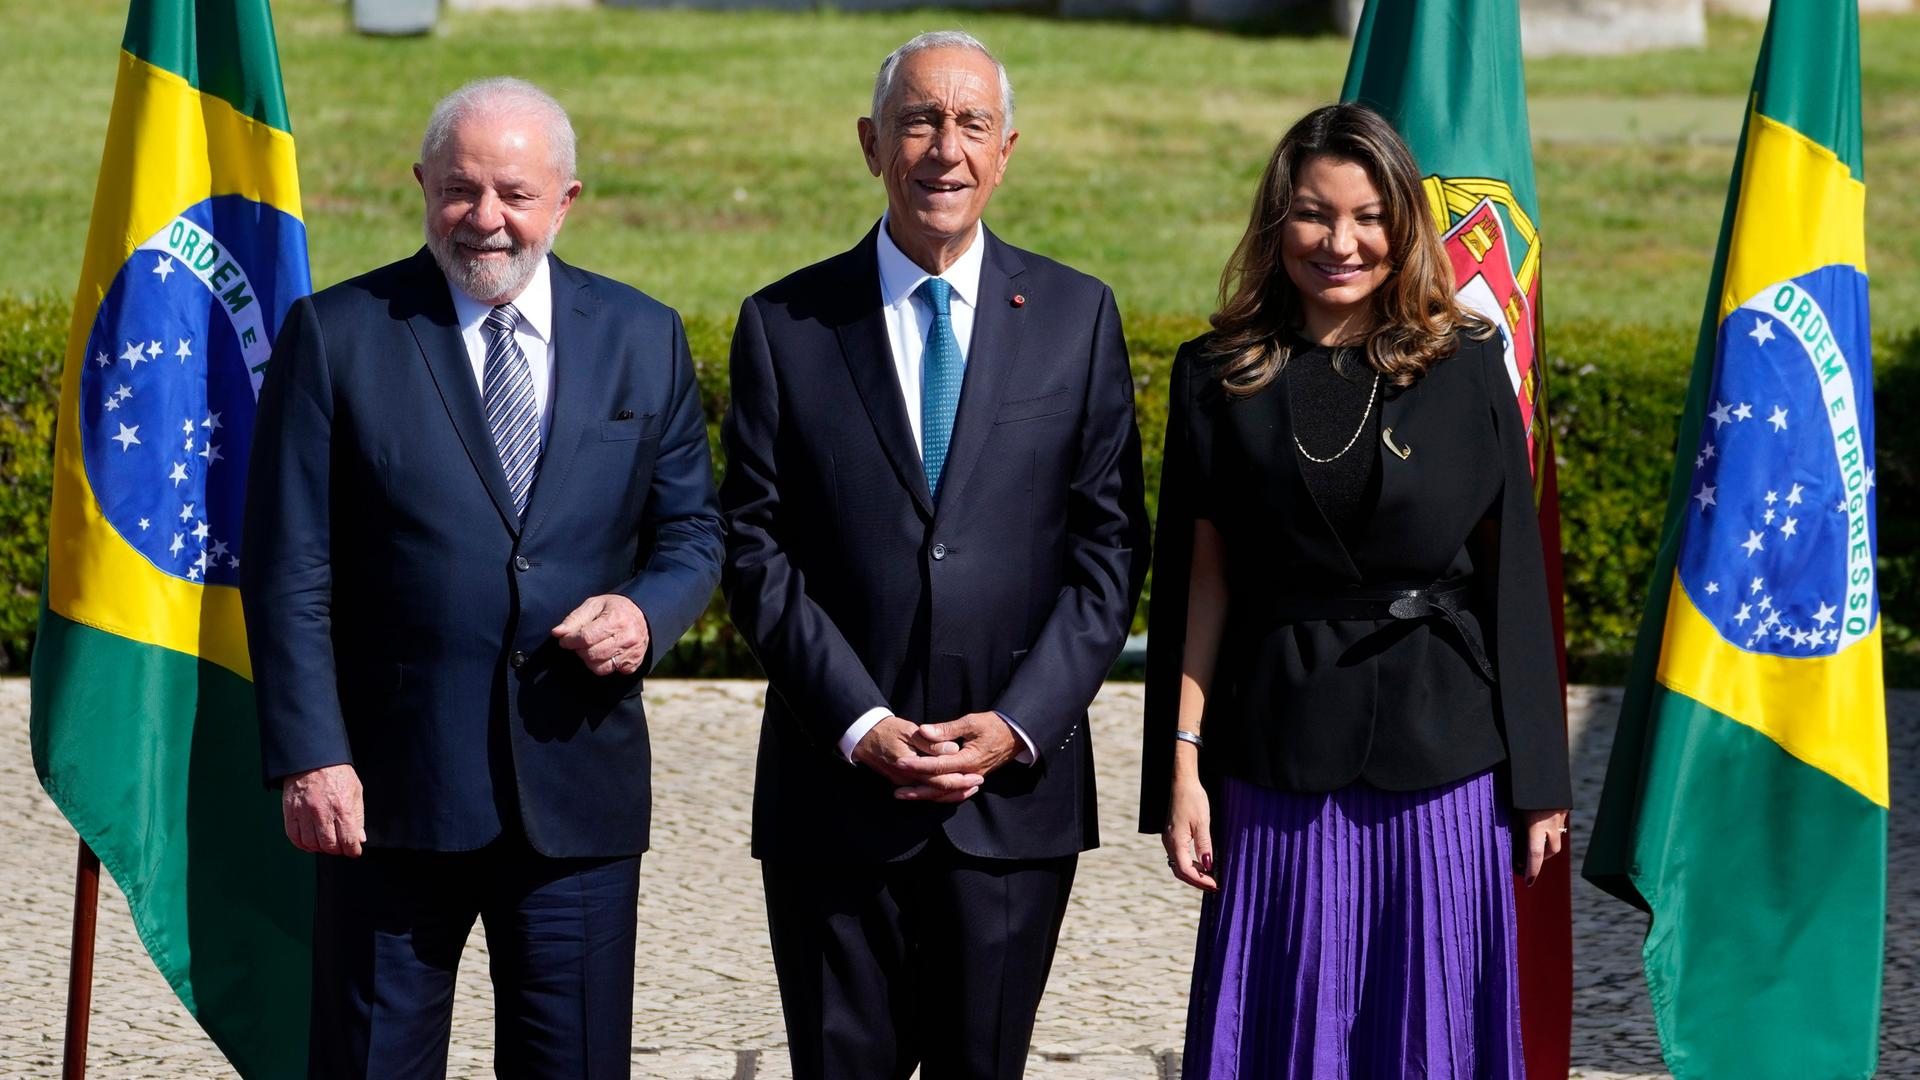 Marcelo Rebelo de Sousa (in der Mitte), Präsident von Portugal, steht zwischen Luiz Inacio Lula da Silva (links), Präsident von Brasilien, und dessen Ehefrau Rosangela da Silva. Hinter ihnen stehen die Landesfahnen.